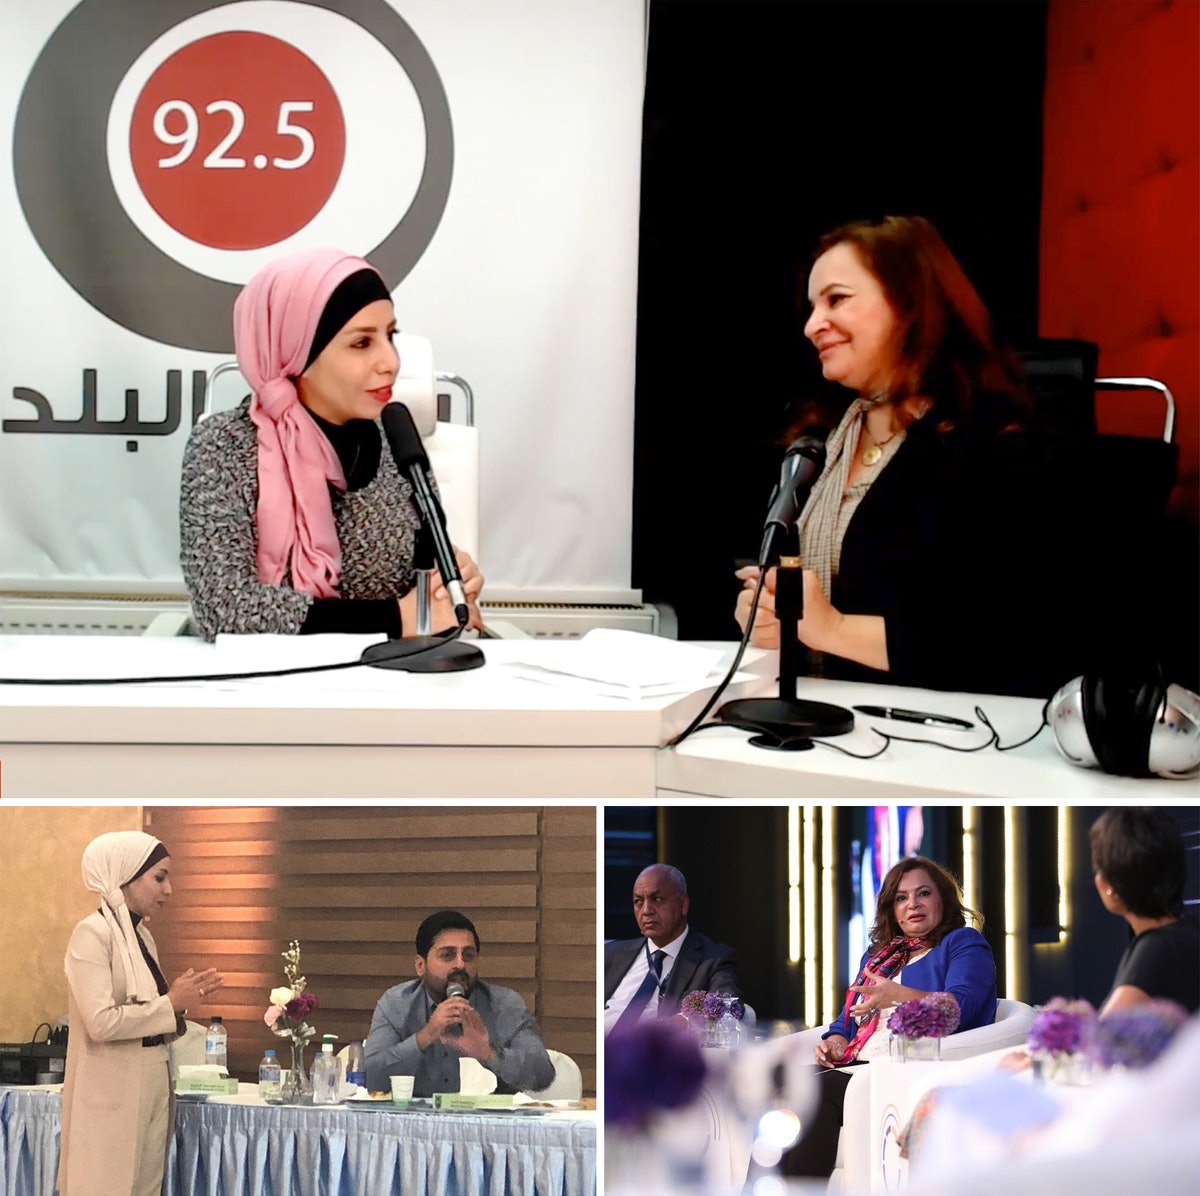 Une série de discussions entre journalistes, initiée par les bahá’ís de Jordanie, a suscité une nouvelle émission de radio qui offre un forum public pour explorer comment mener une vie cohérente et être une source de bien social.